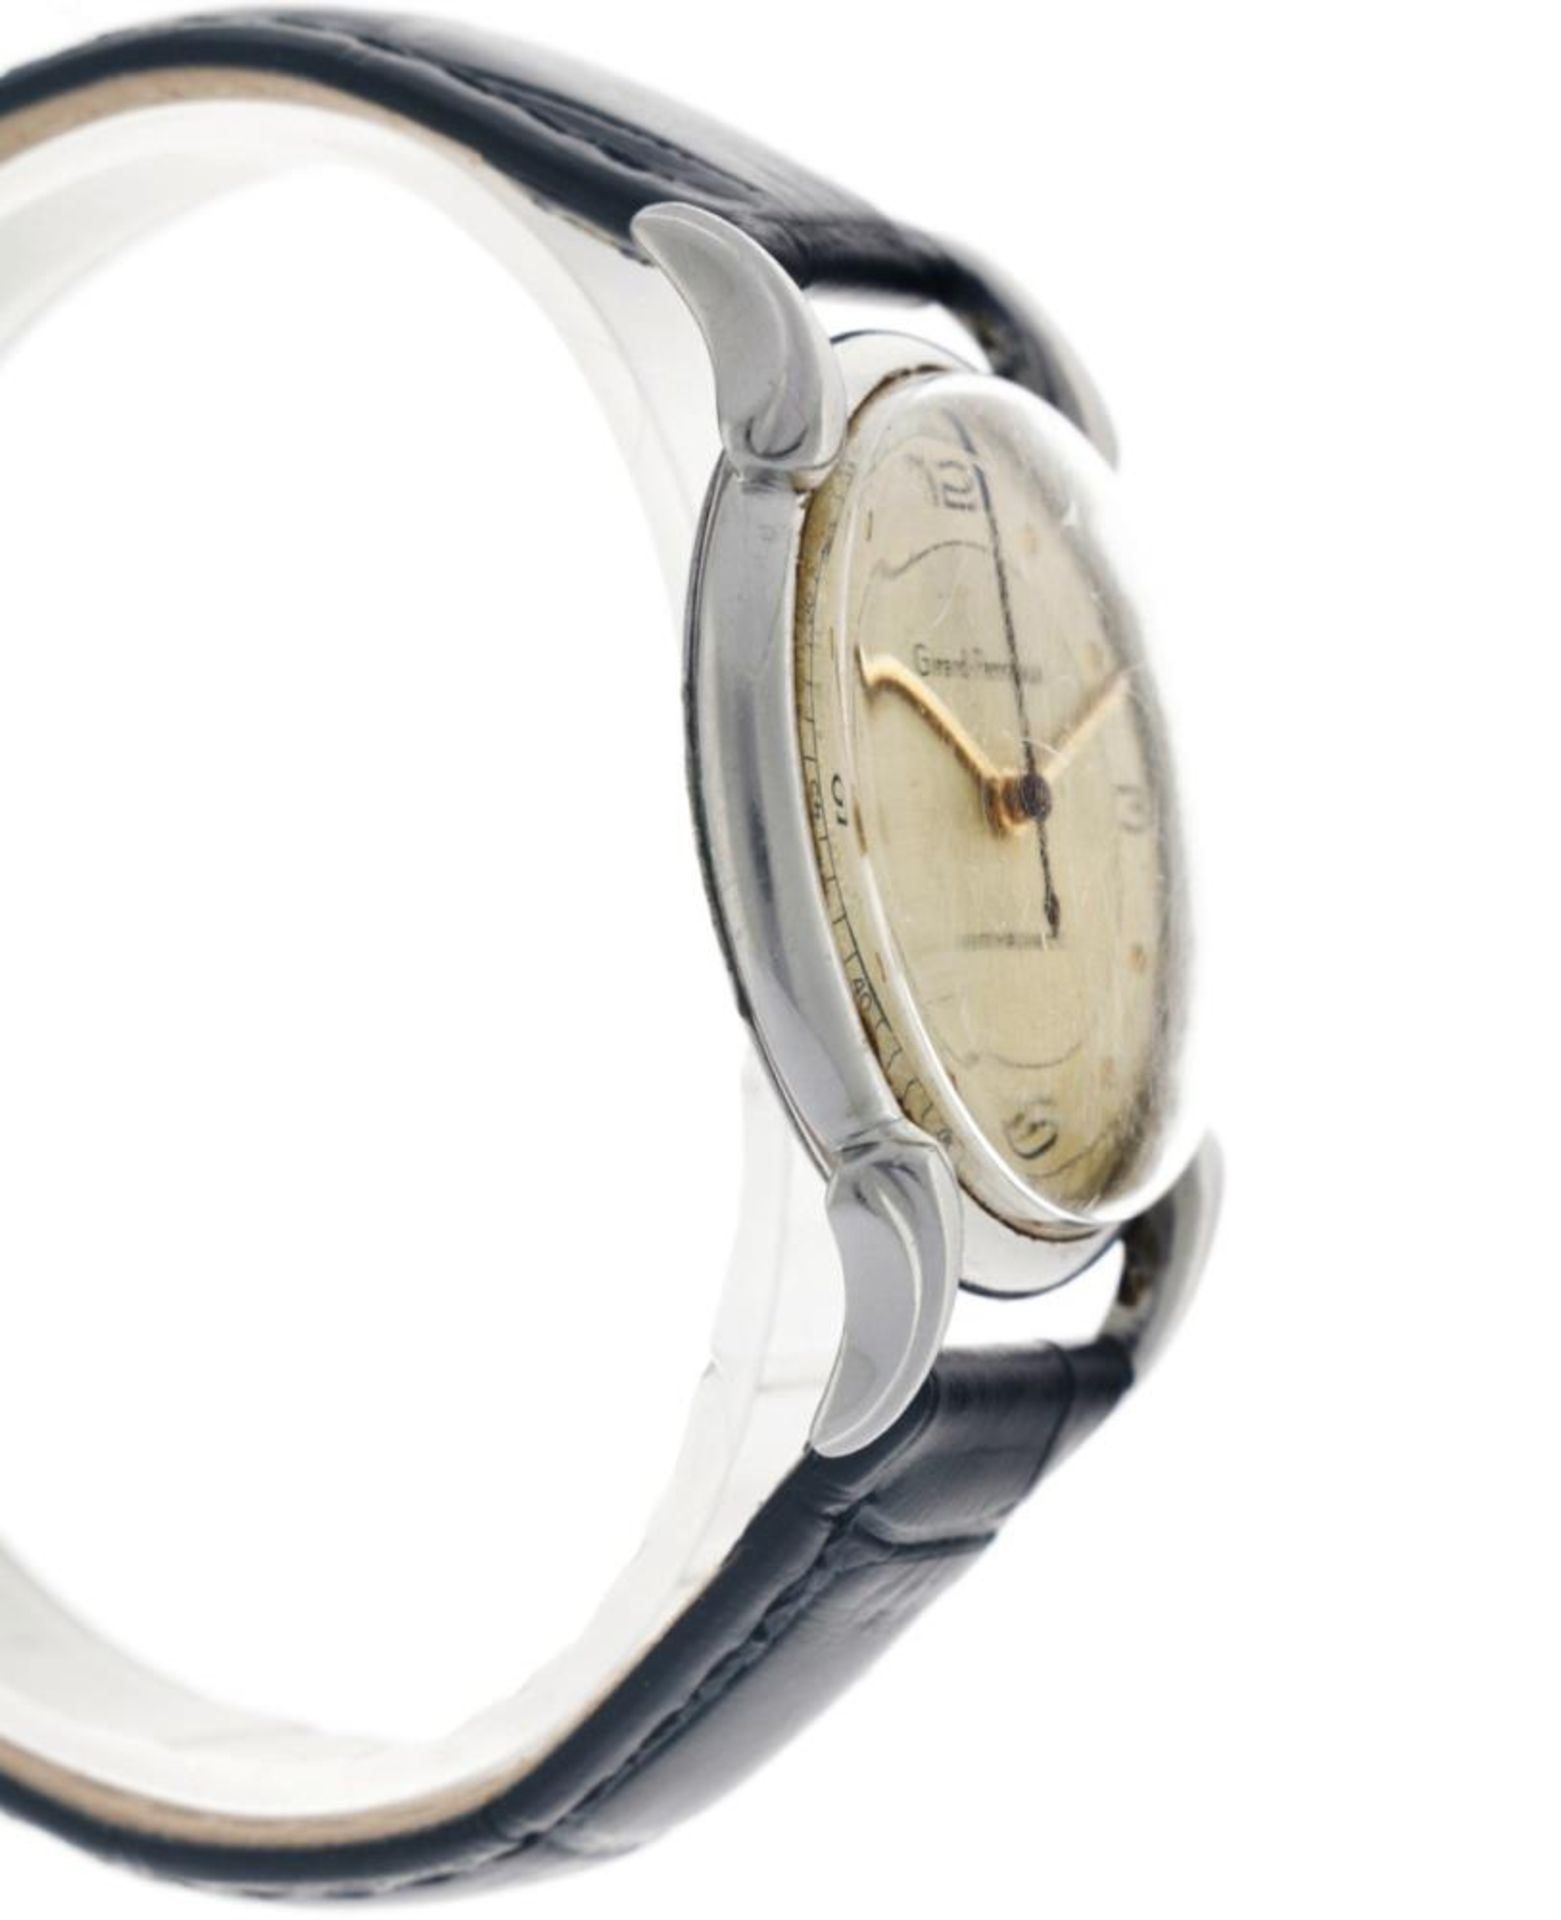 Girard-Perregaux Dogleg 494779 - Men's watch - approx. 1950. - Image 7 of 14